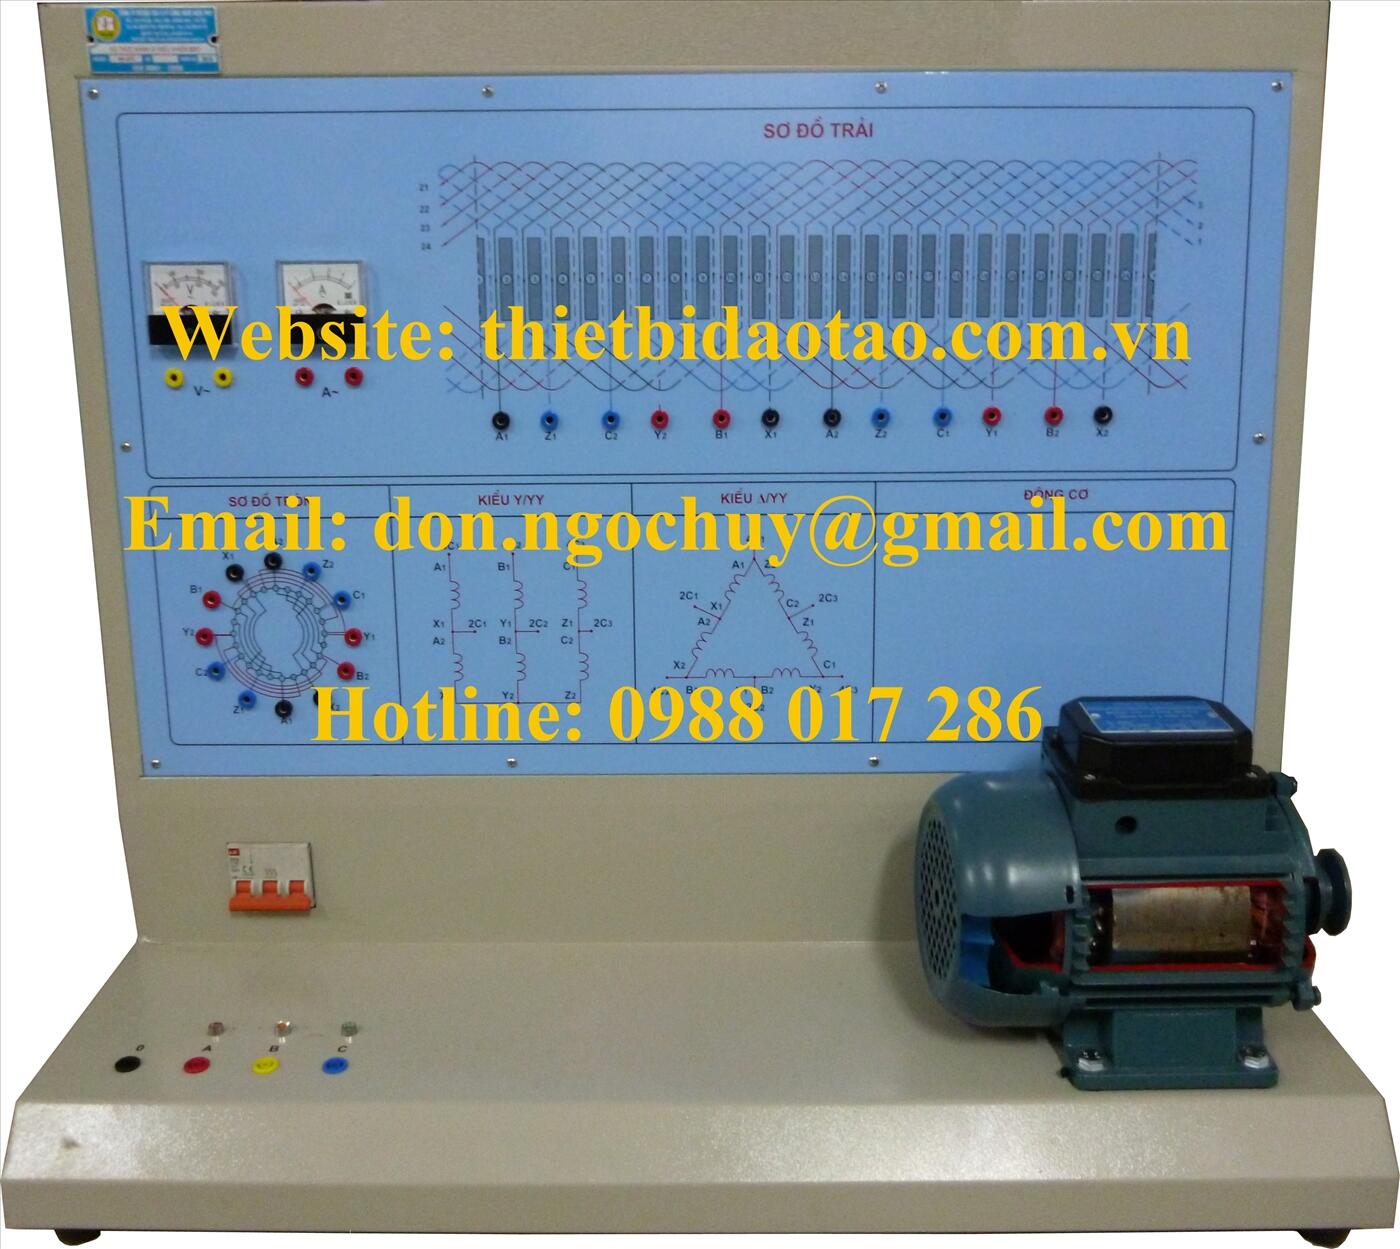 Mô hình dàn trải tivi LCD phục vụ giảng dạy trong đào tạo nghề điện tử   Phòng trưng bày  Trung tâm Thông tin Ứng dụng Chuyển giao KHCN Thanh hóa